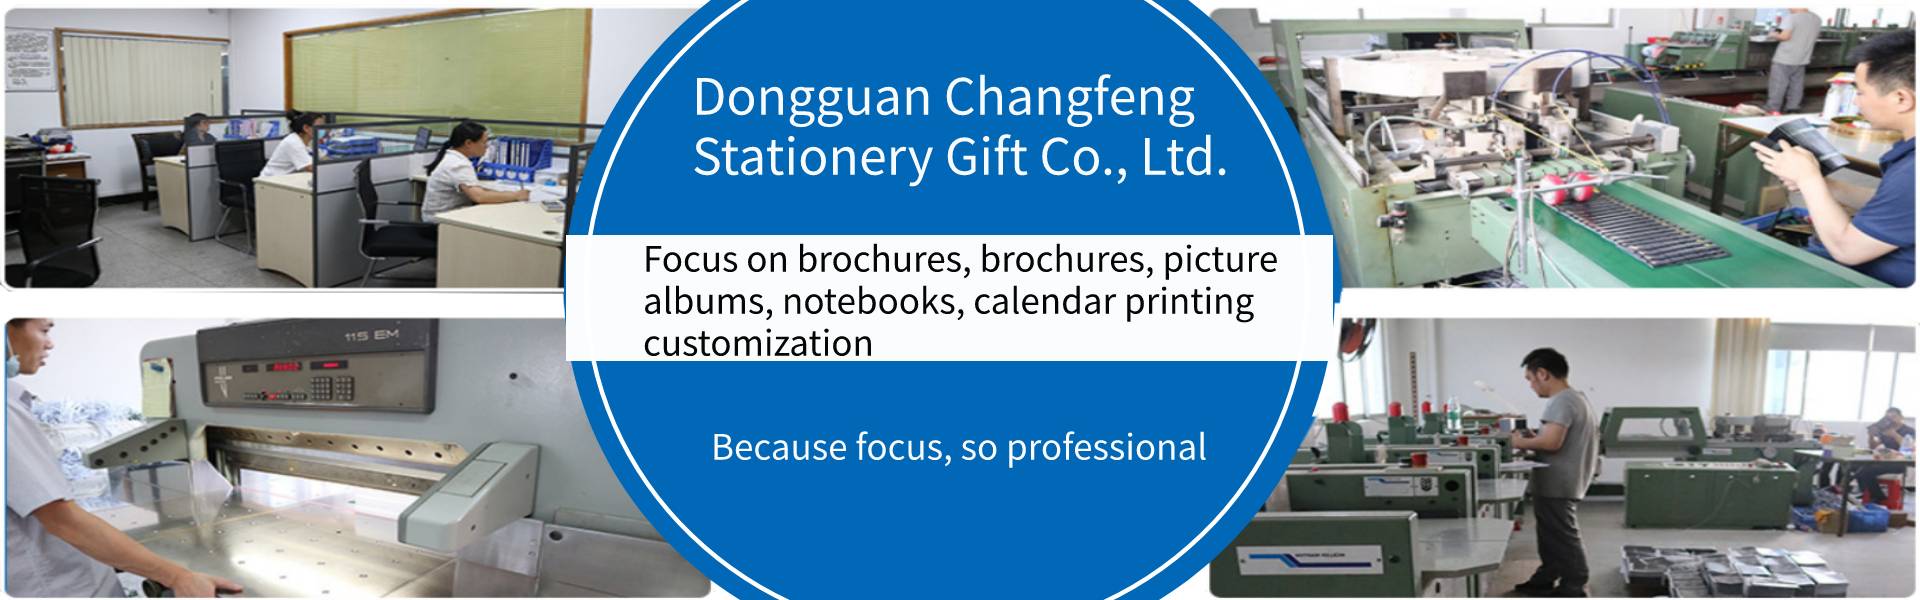 návod k použití, obrázkové album, notebook,Dongguan Changfeng Stationery Gift Co., Ltd.